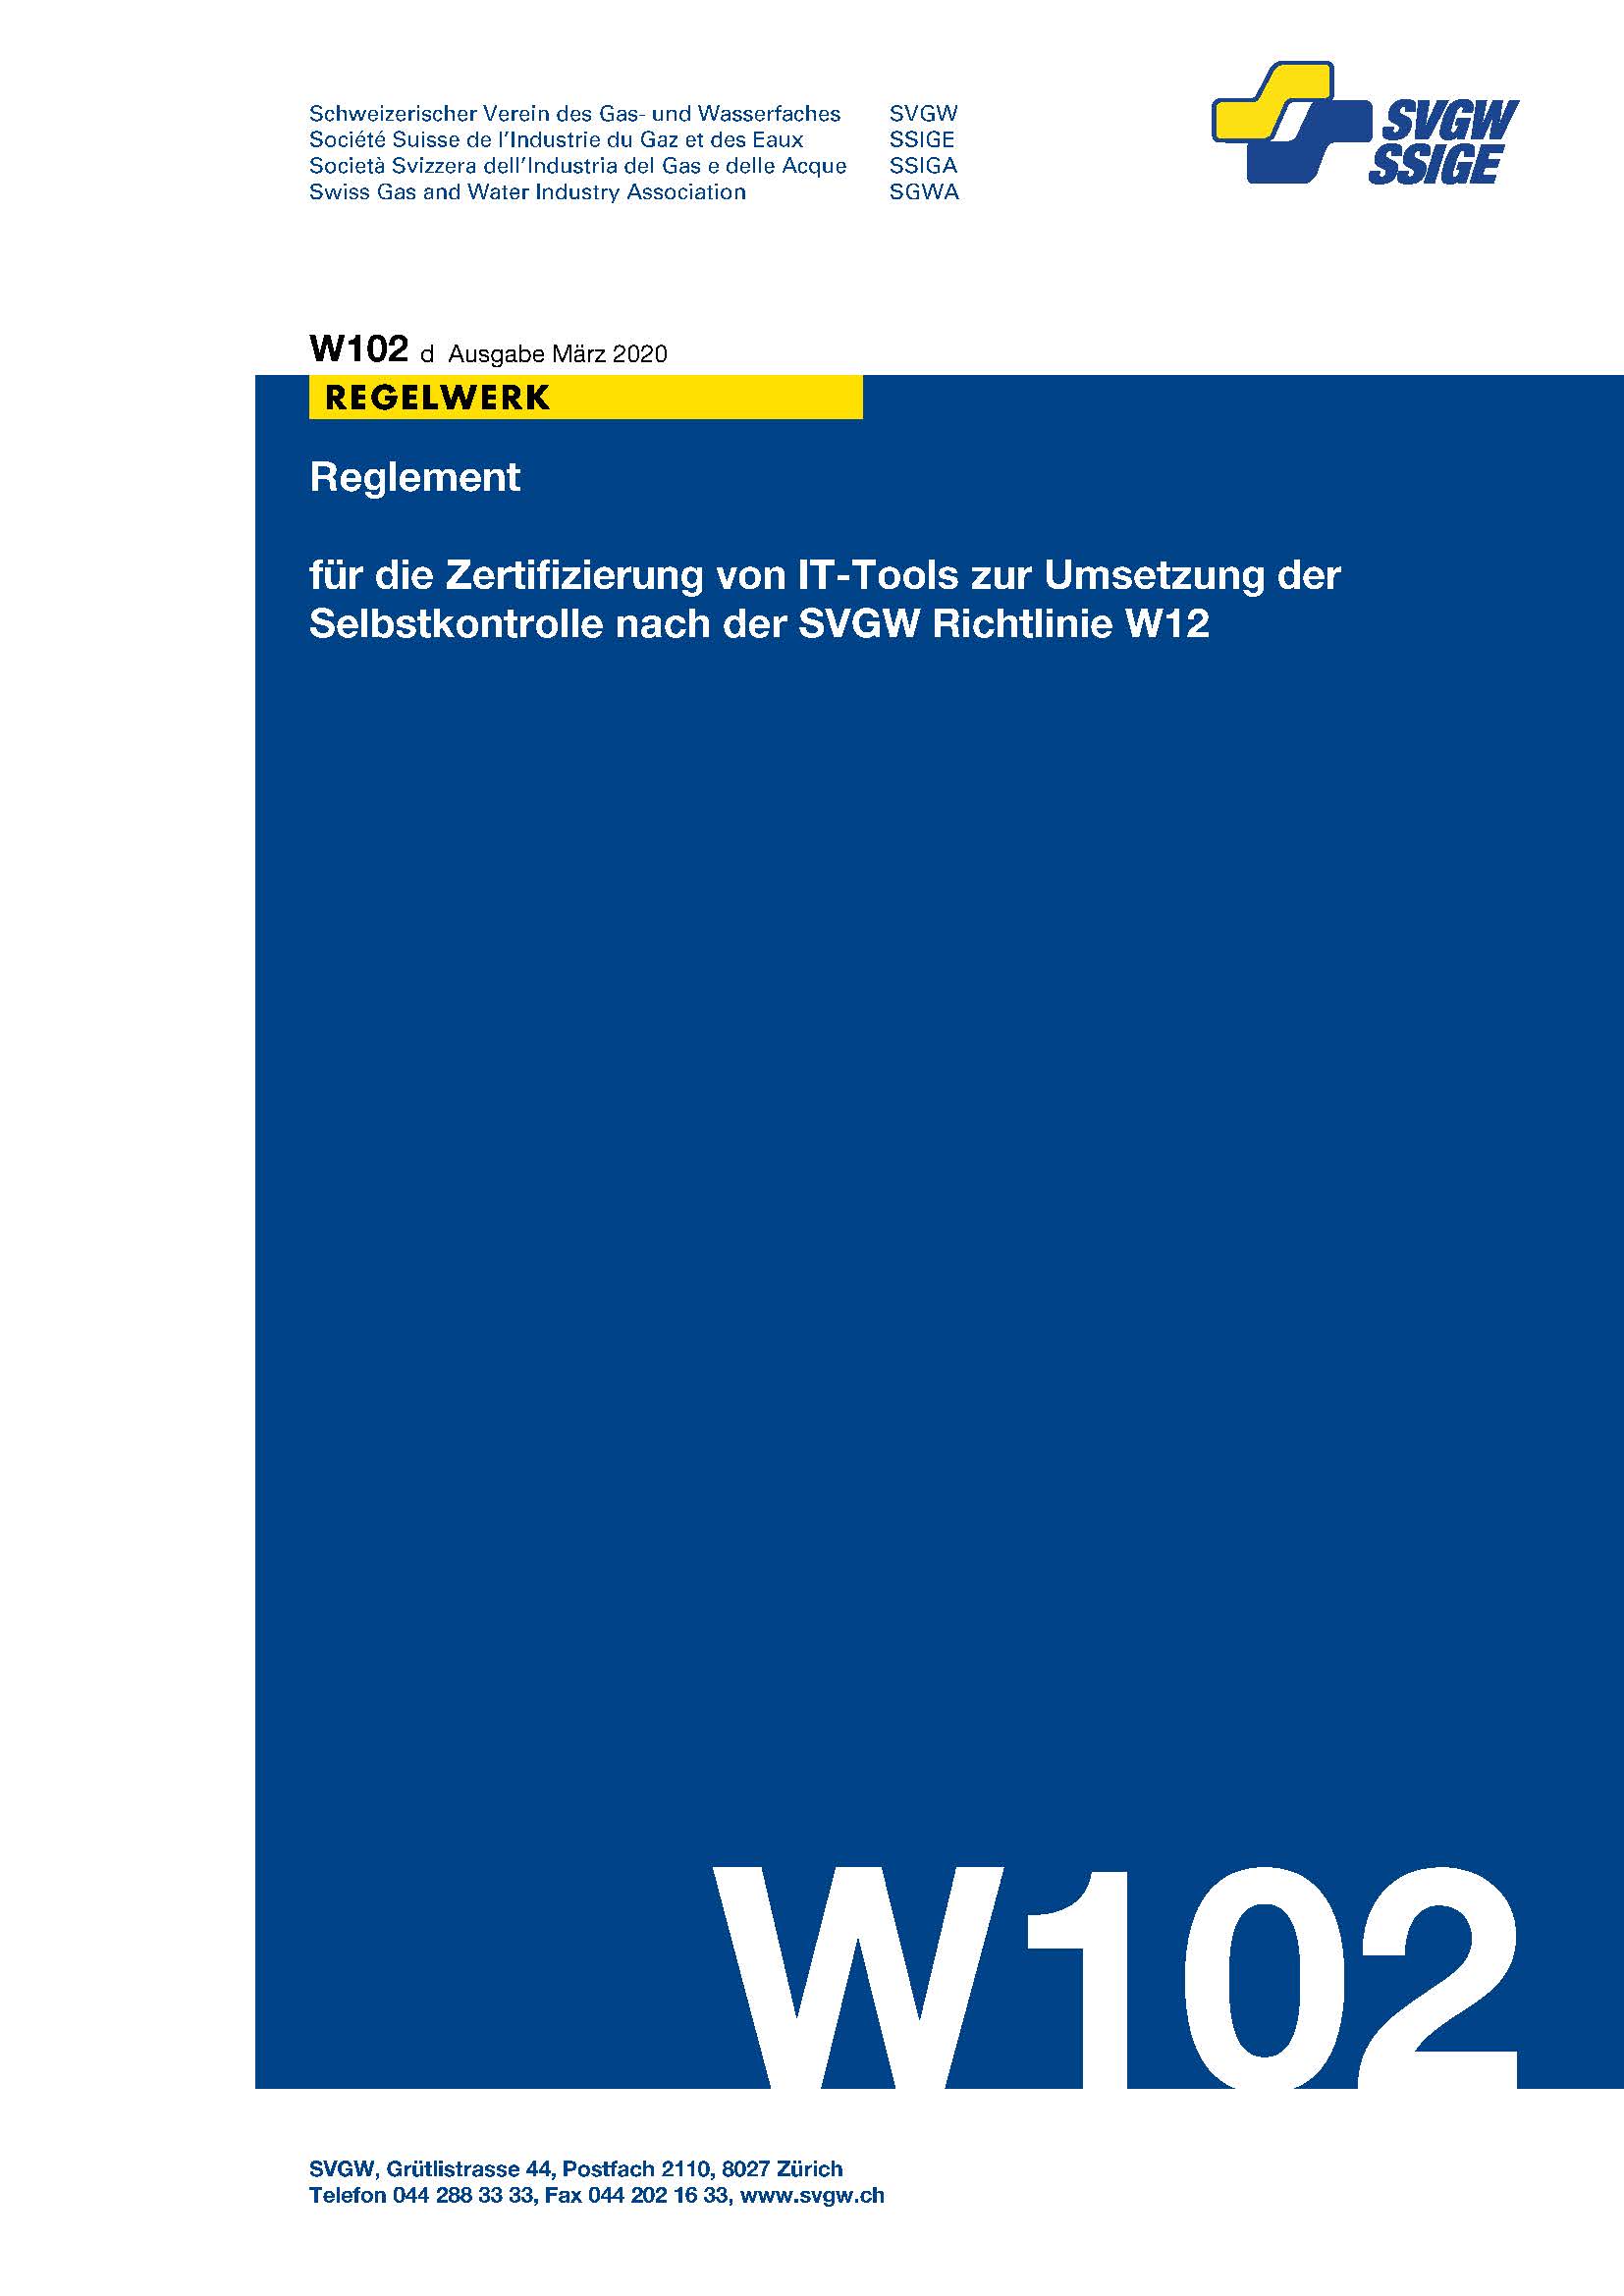 W102 d Reglement für die Zertifizierung von IT-Tools zur Umsetzung der Selbstkontrolle nach der SVGW Richtlinie W12